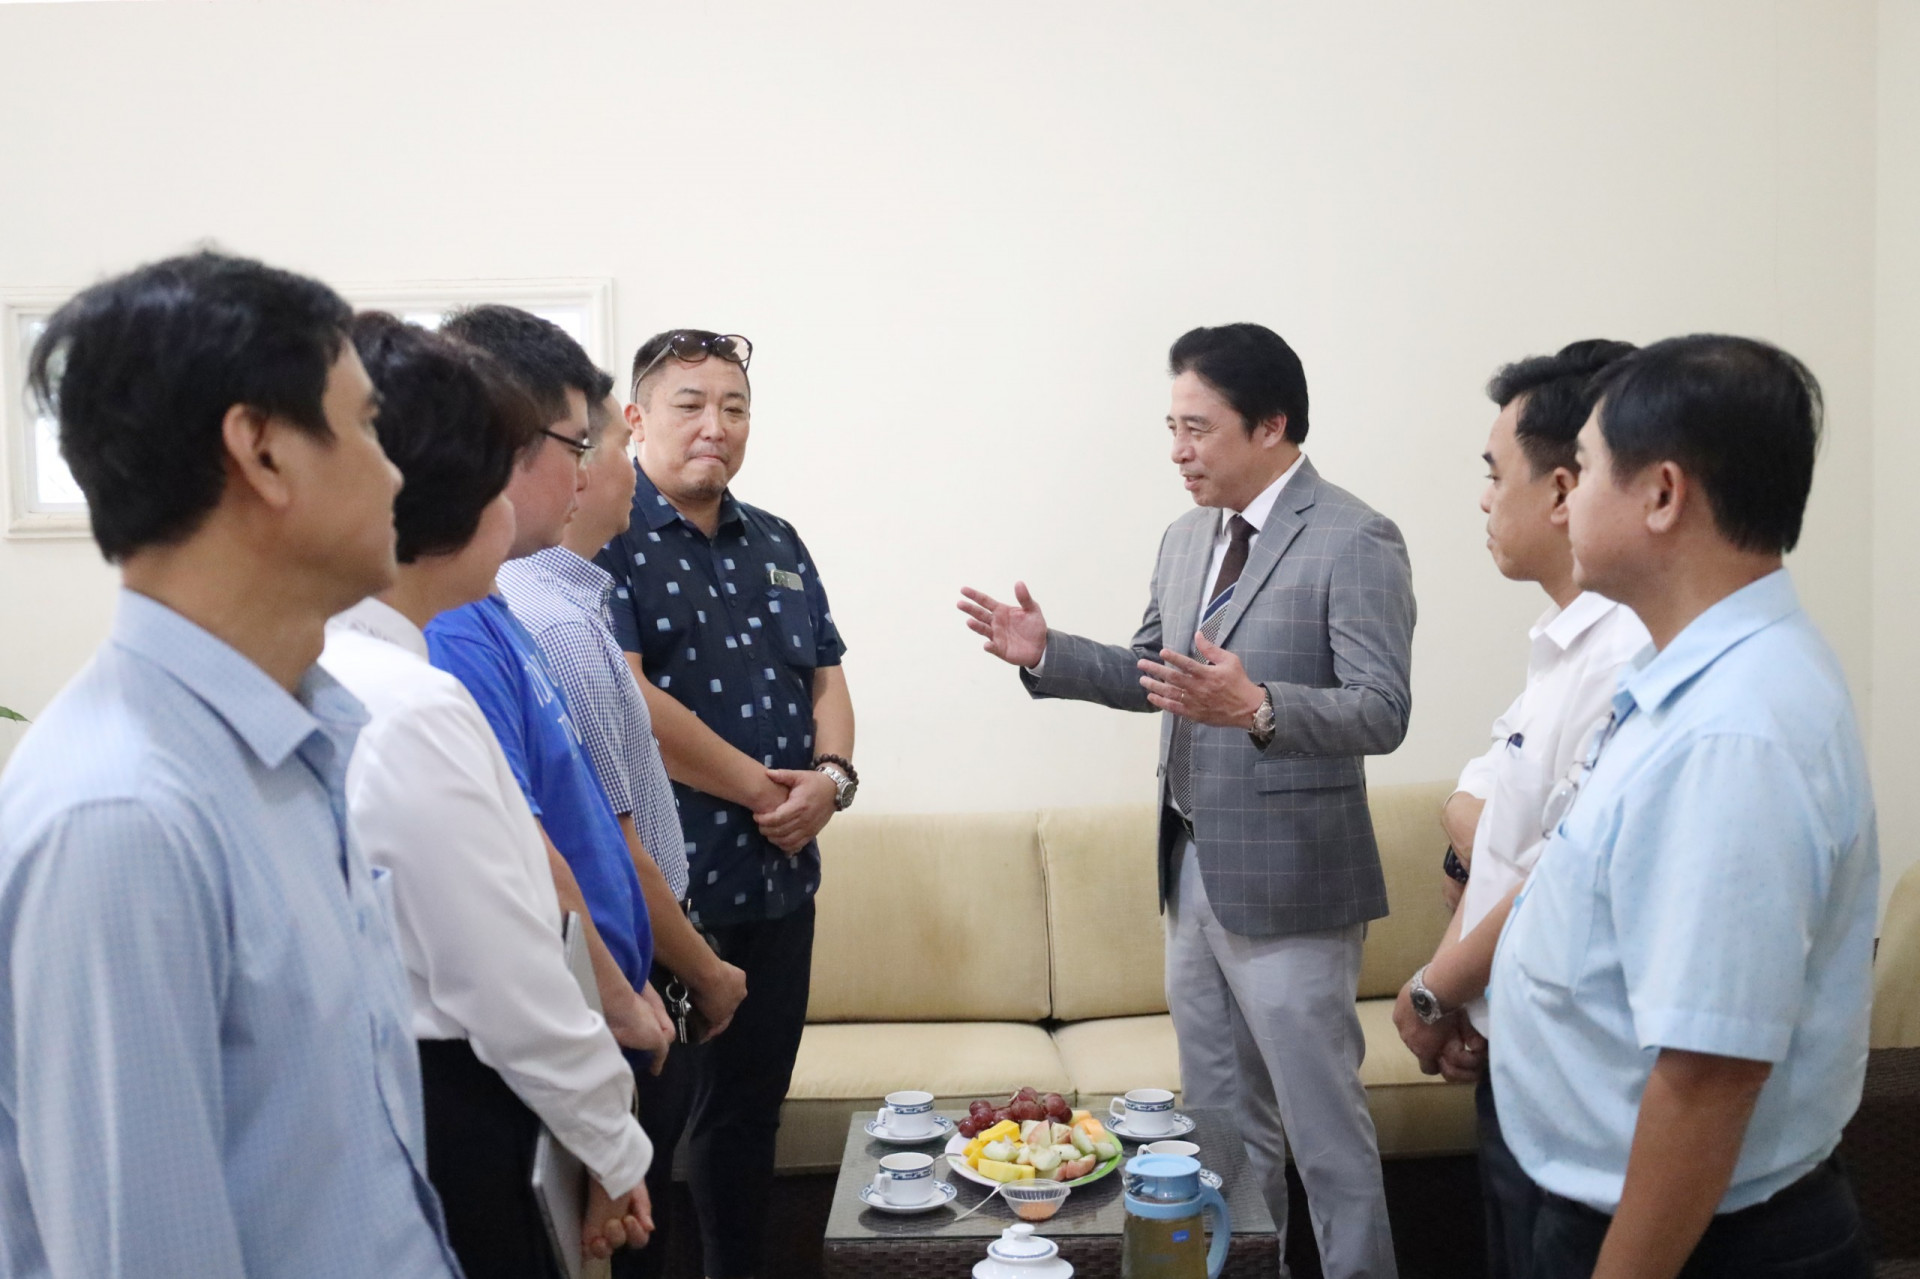 Đồng chí Nguyễn Khắc Toàn thăm doanh nghiệp nhân Ngày Doanh nhân Việt Nam 13-10. Ảnh: Mạnh Hùng

